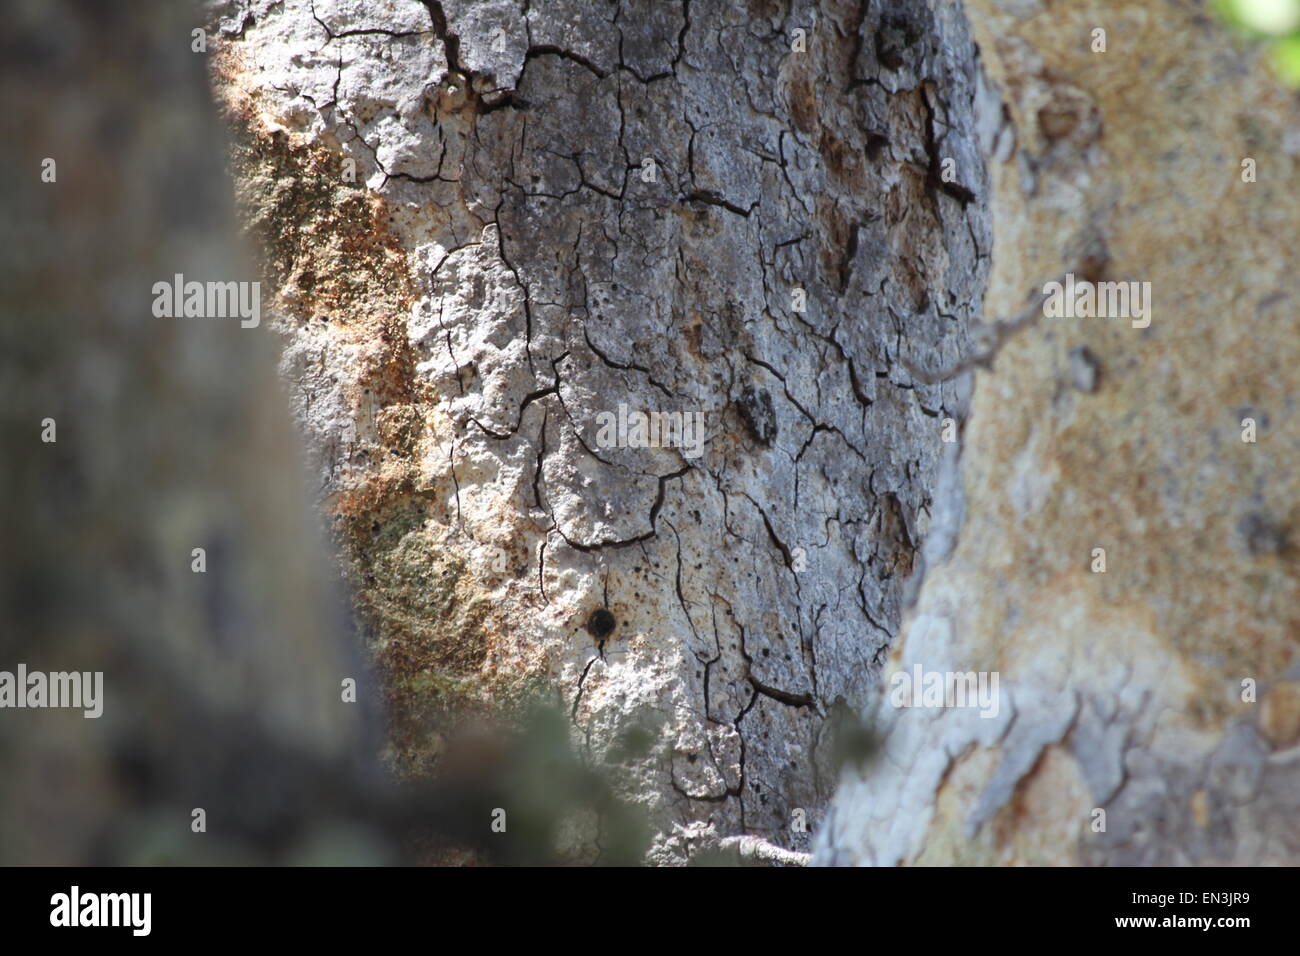 Tree bark close up Stock Photo